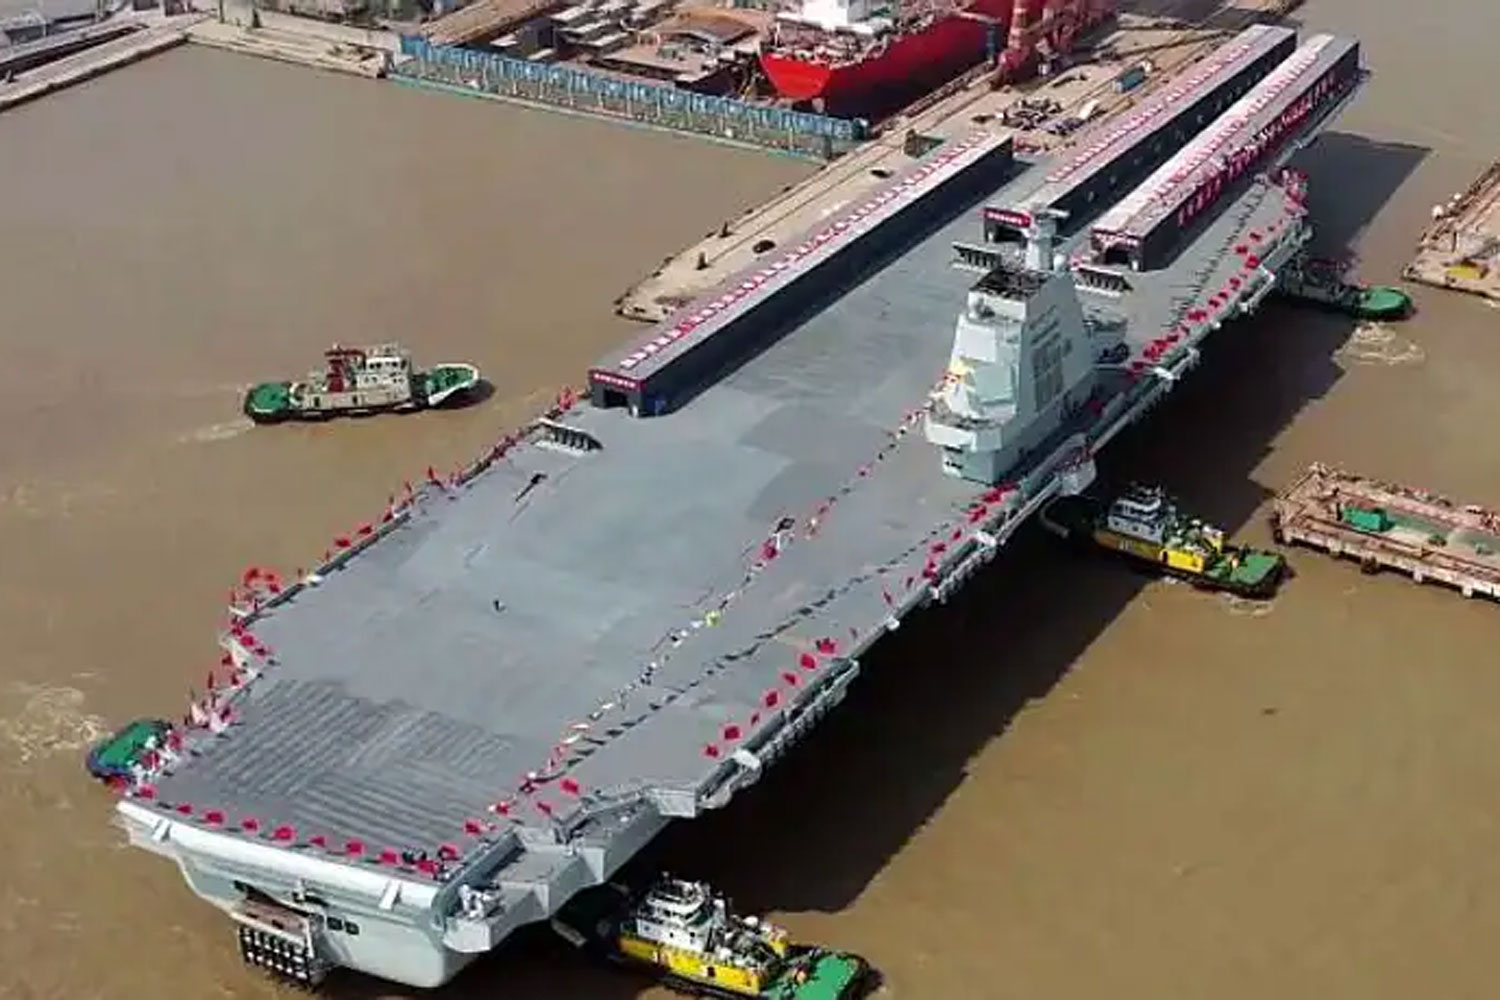 Fujian Super Carrier China Yang Pertama Saingi Amerika Di Indo